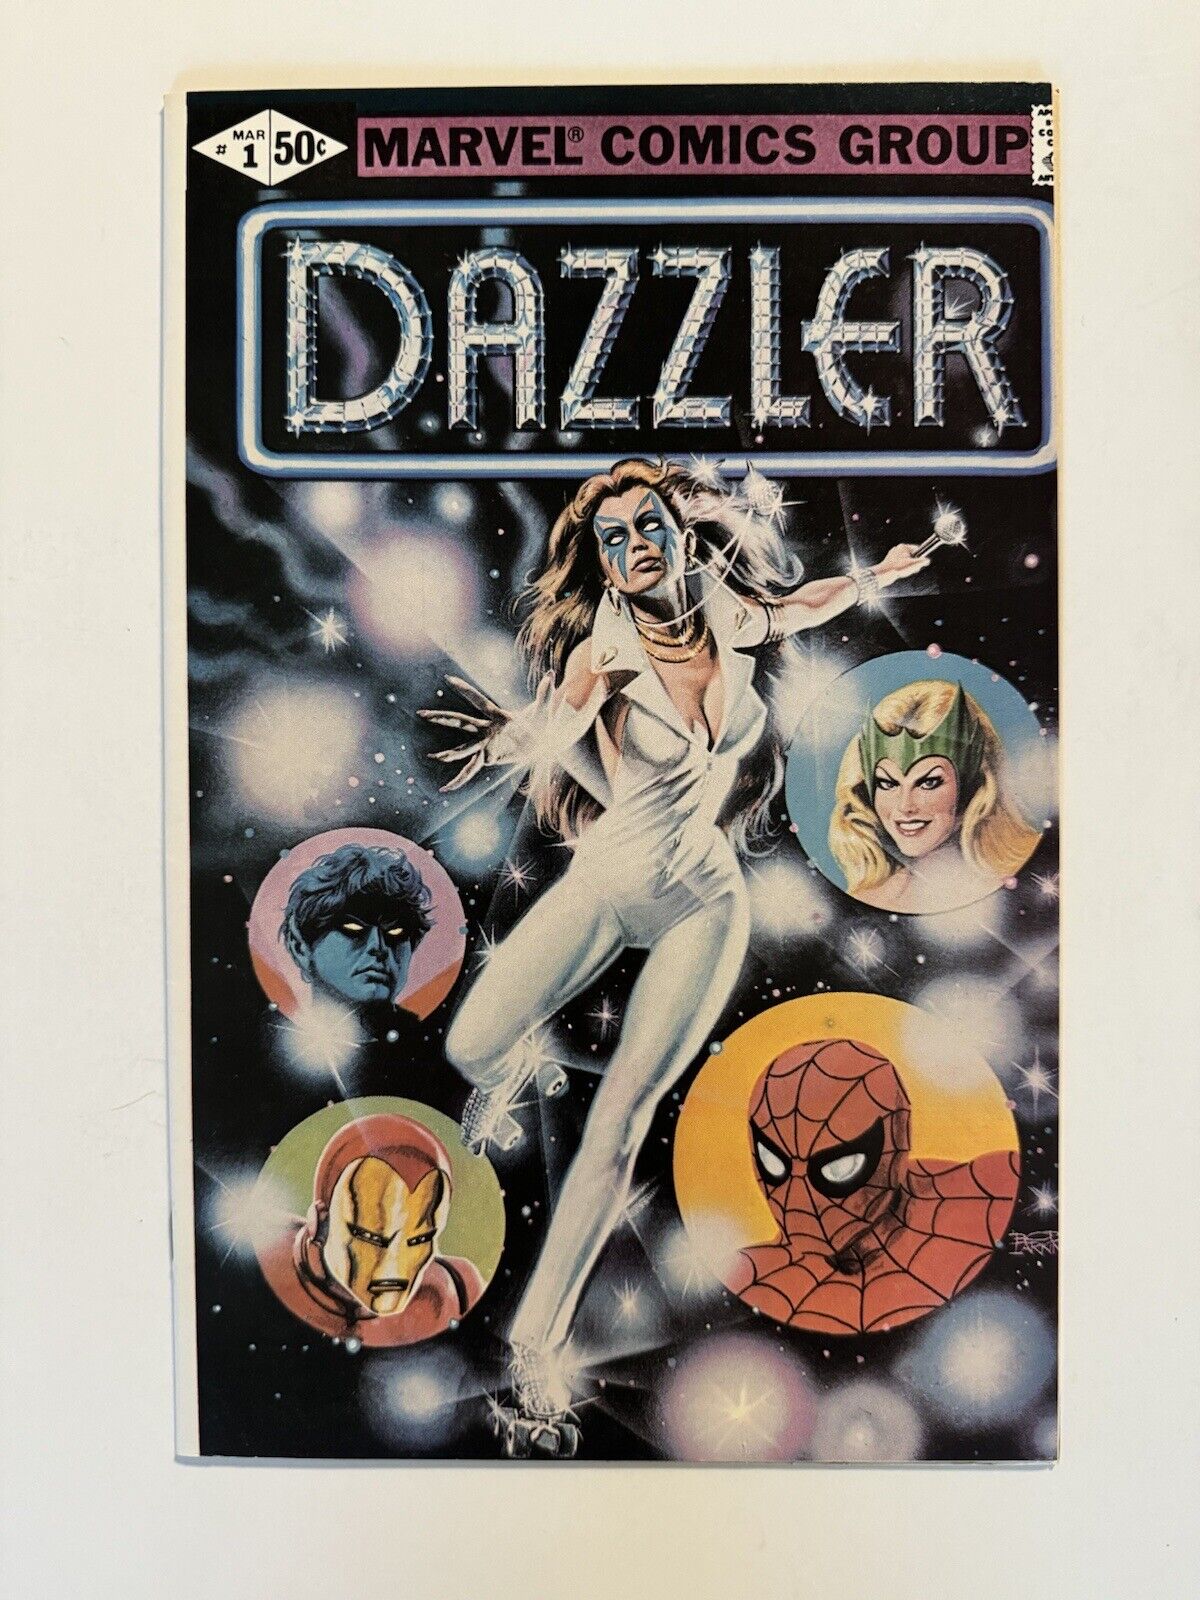 Dazzler #1 - Mar 1981 - Marvel - Recalled Print Error Version - 8.0 VF